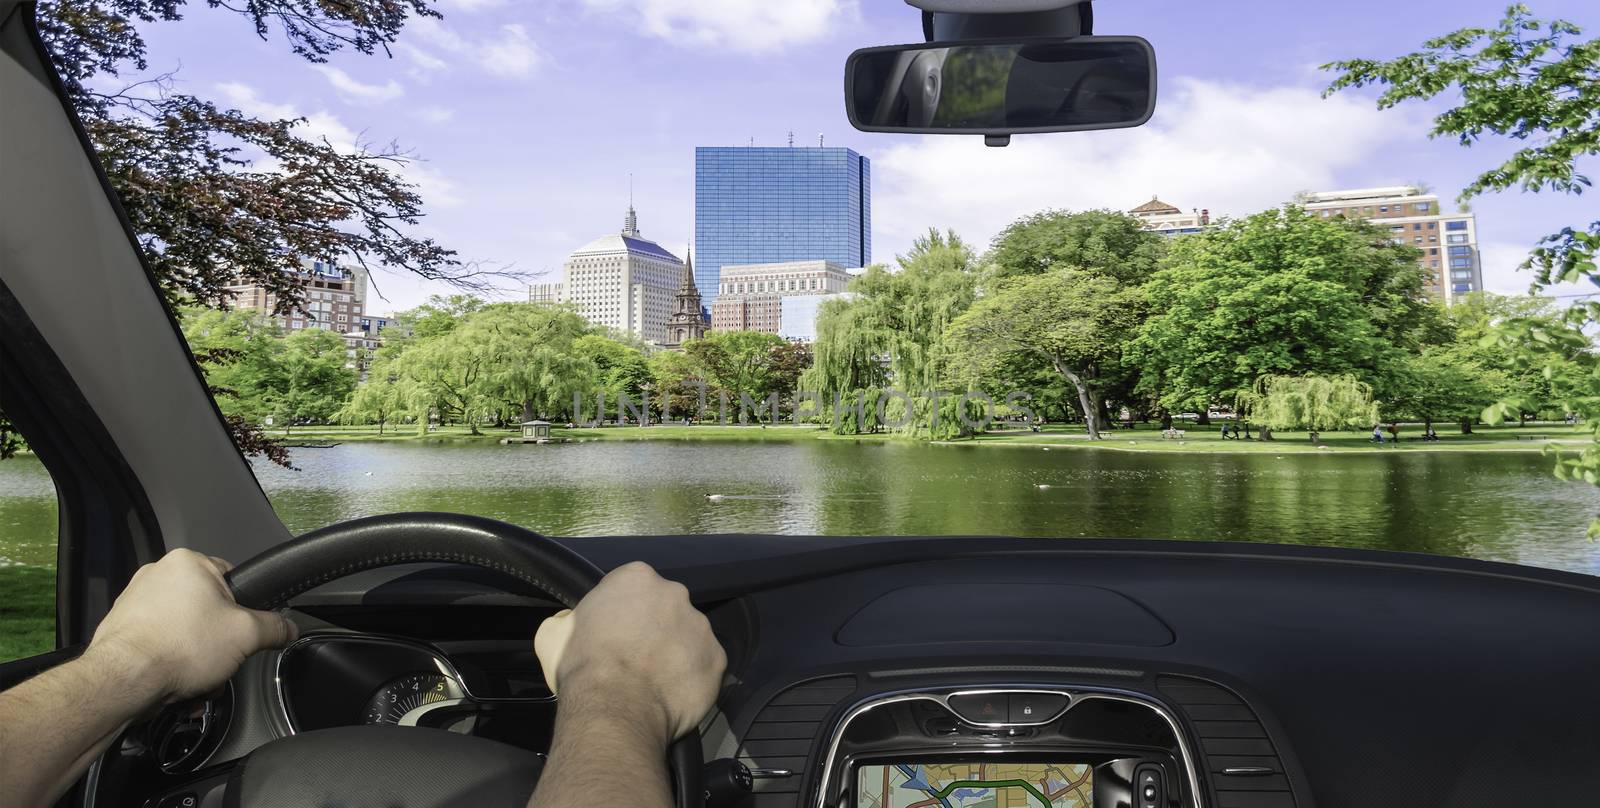 Driving a car towards the Boston Public Garden, USA by marcorubino